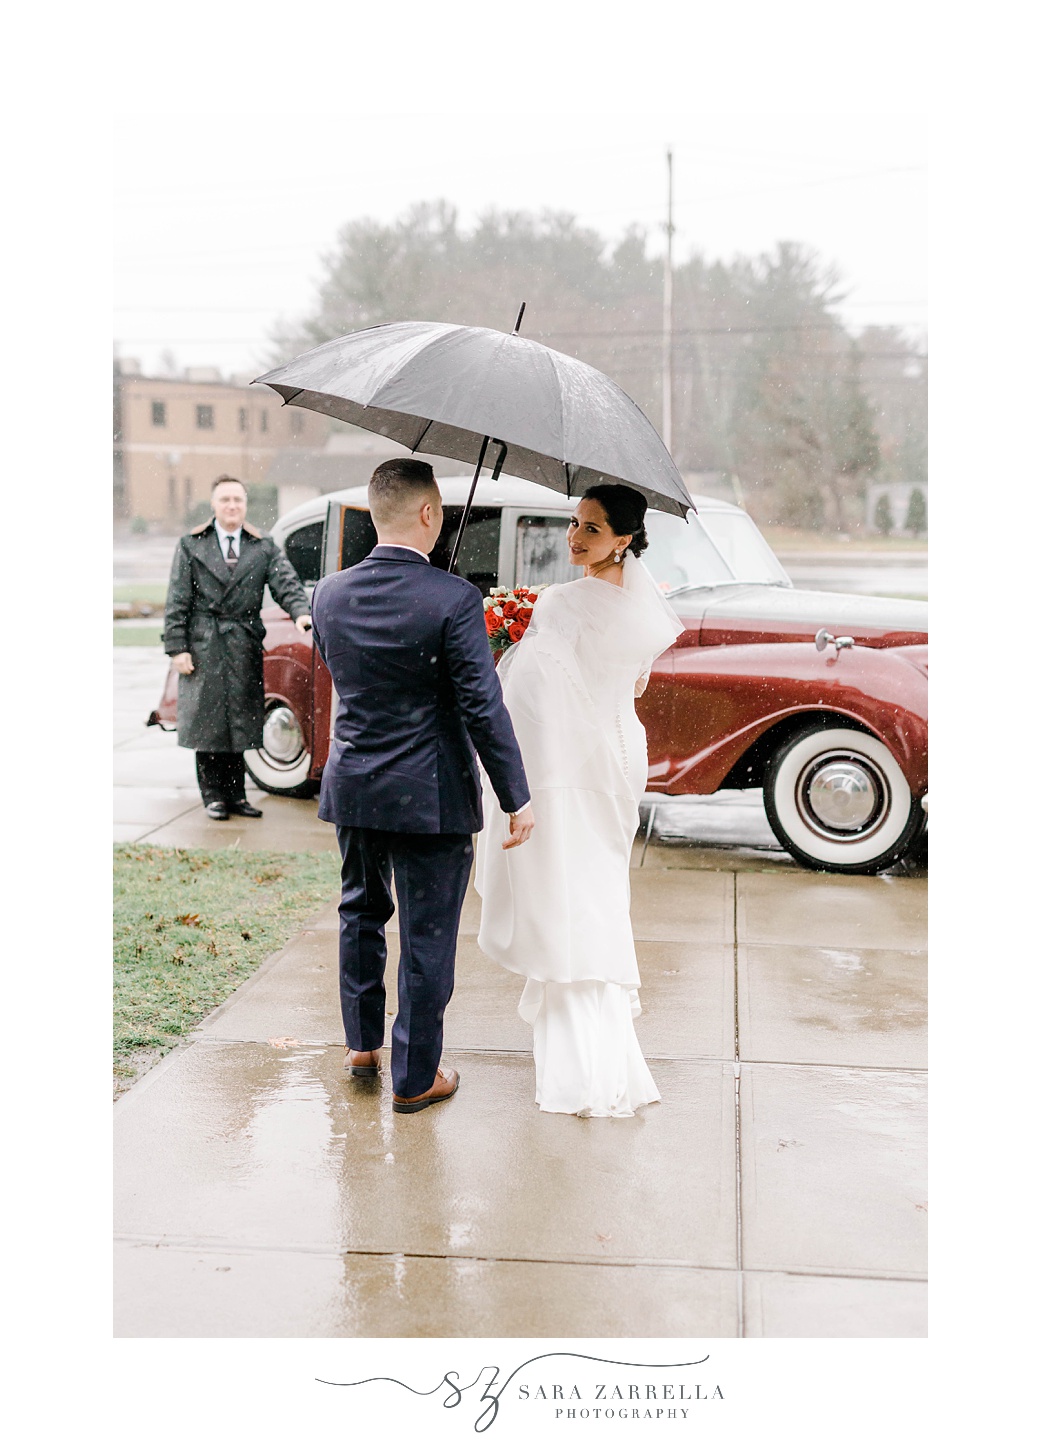 newlyweds leave church under umbrella on rainy wedding day